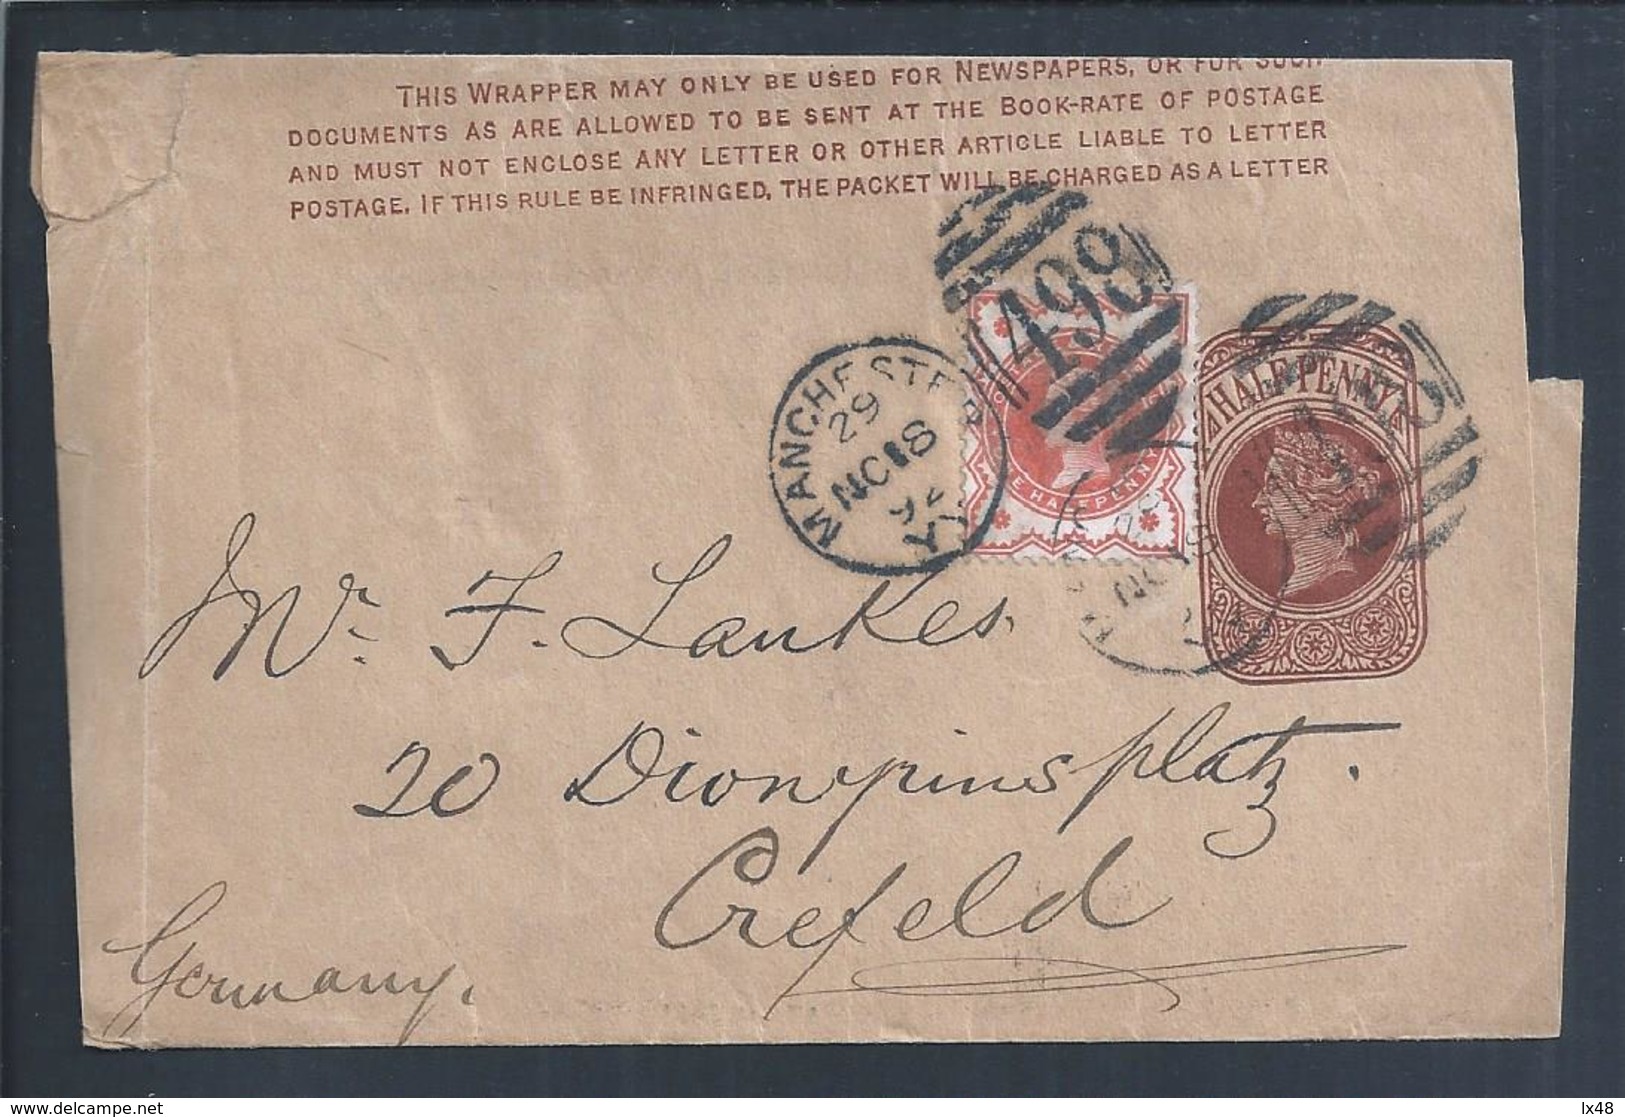 Stationery Newspaper Strap With Additional Stamp From Manchester To Crefeld, Germany. Briefpapier-Zeitungsband Mit Zusät - Briefe U. Dokumente